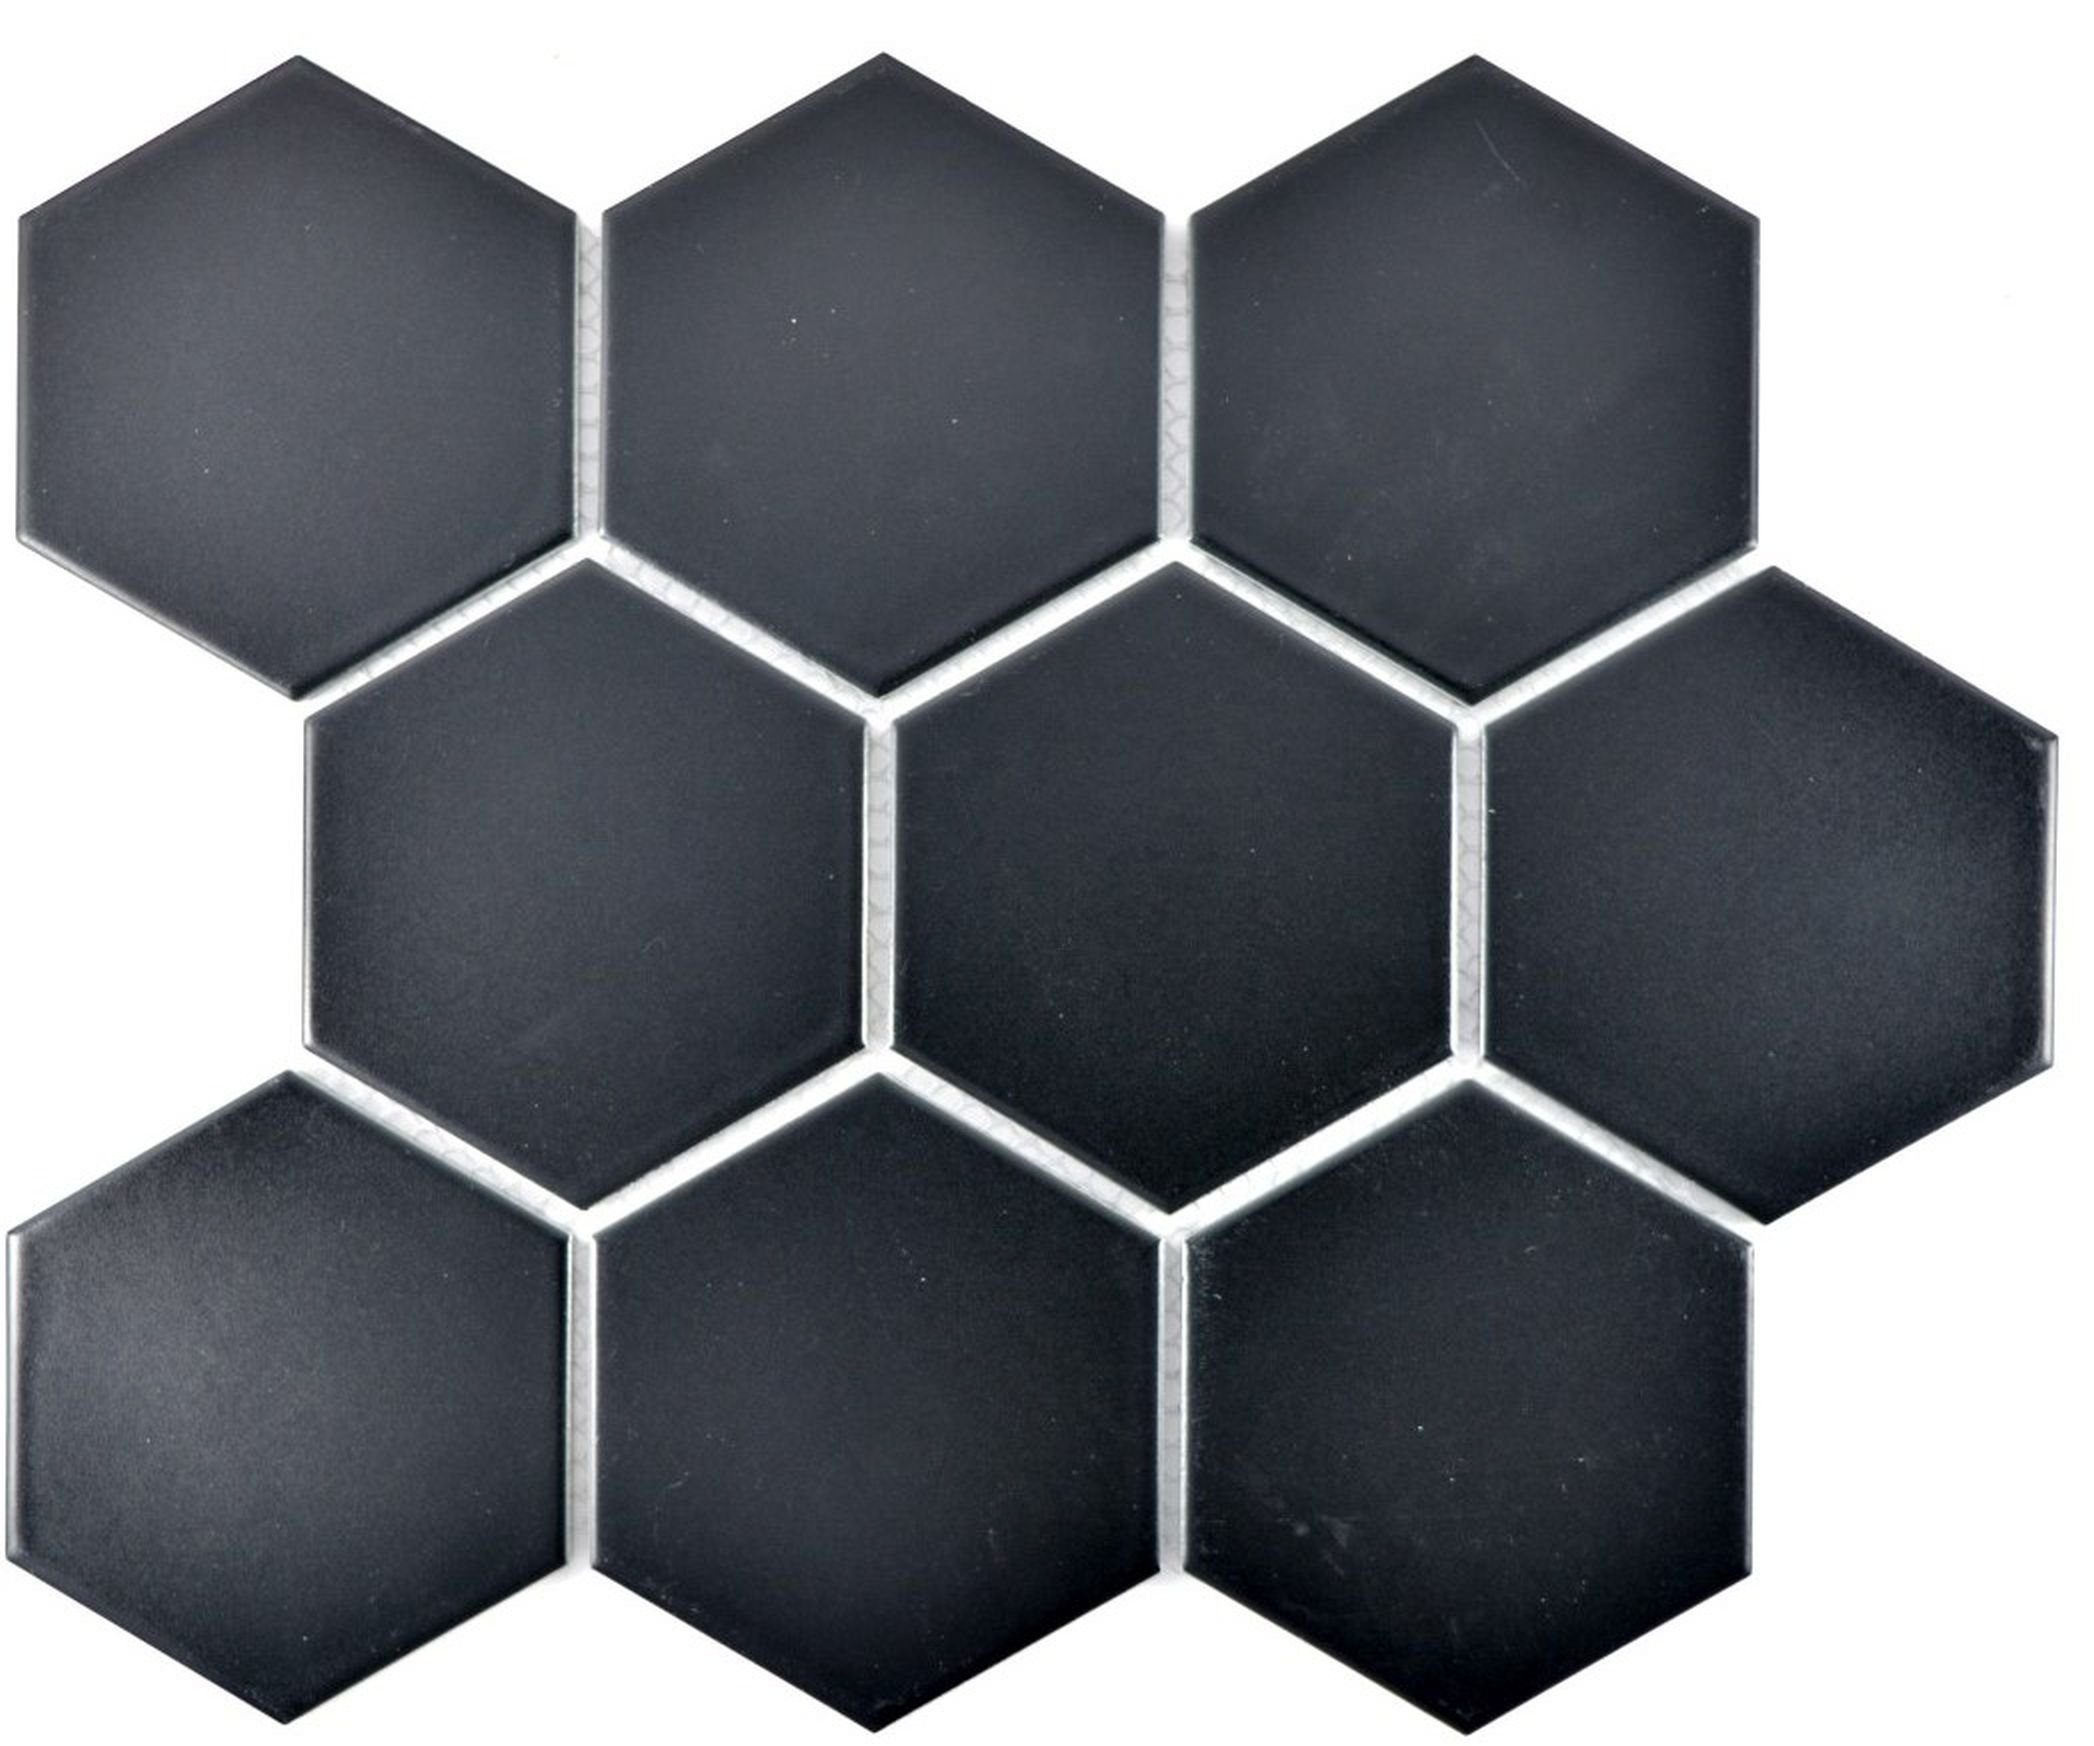 Mosani Mosaikfliesen Hexagonale Sechseck Mosaik Fliese Keramik schwarz matt Küche Bad